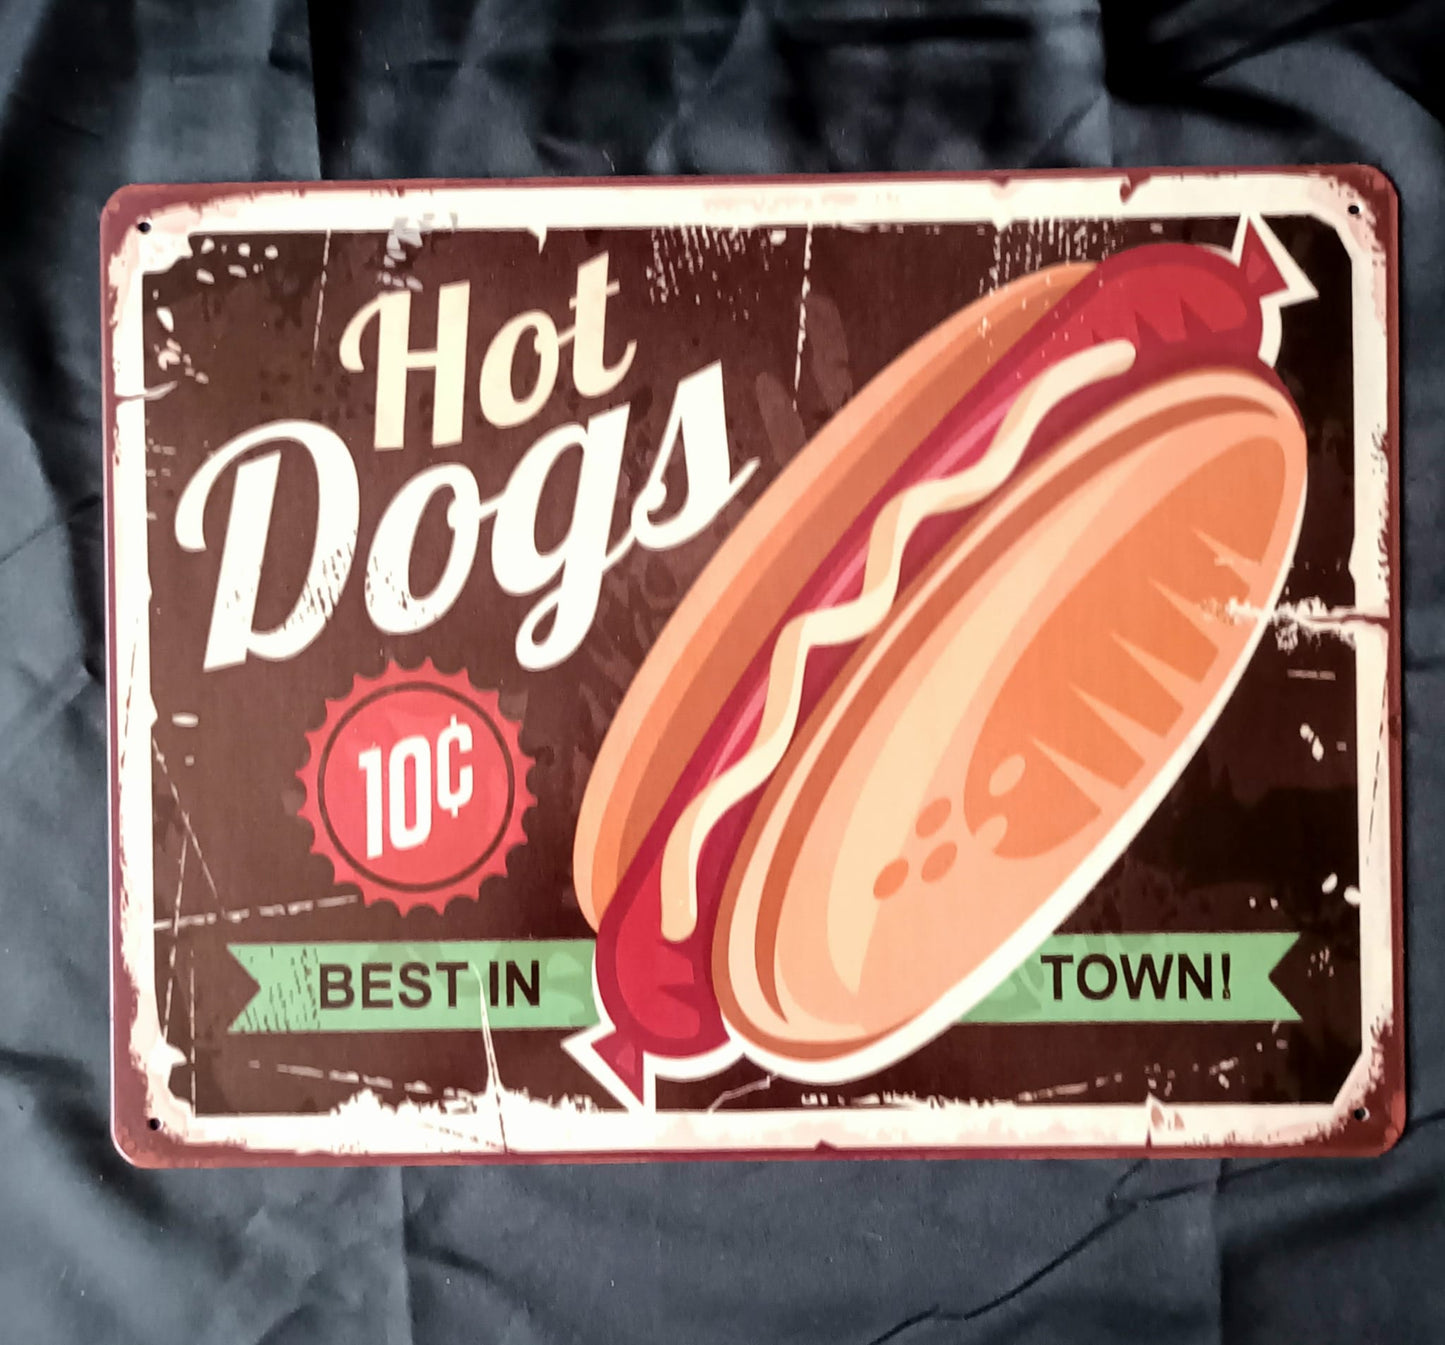 Blechschild "Hot Dog 10c"